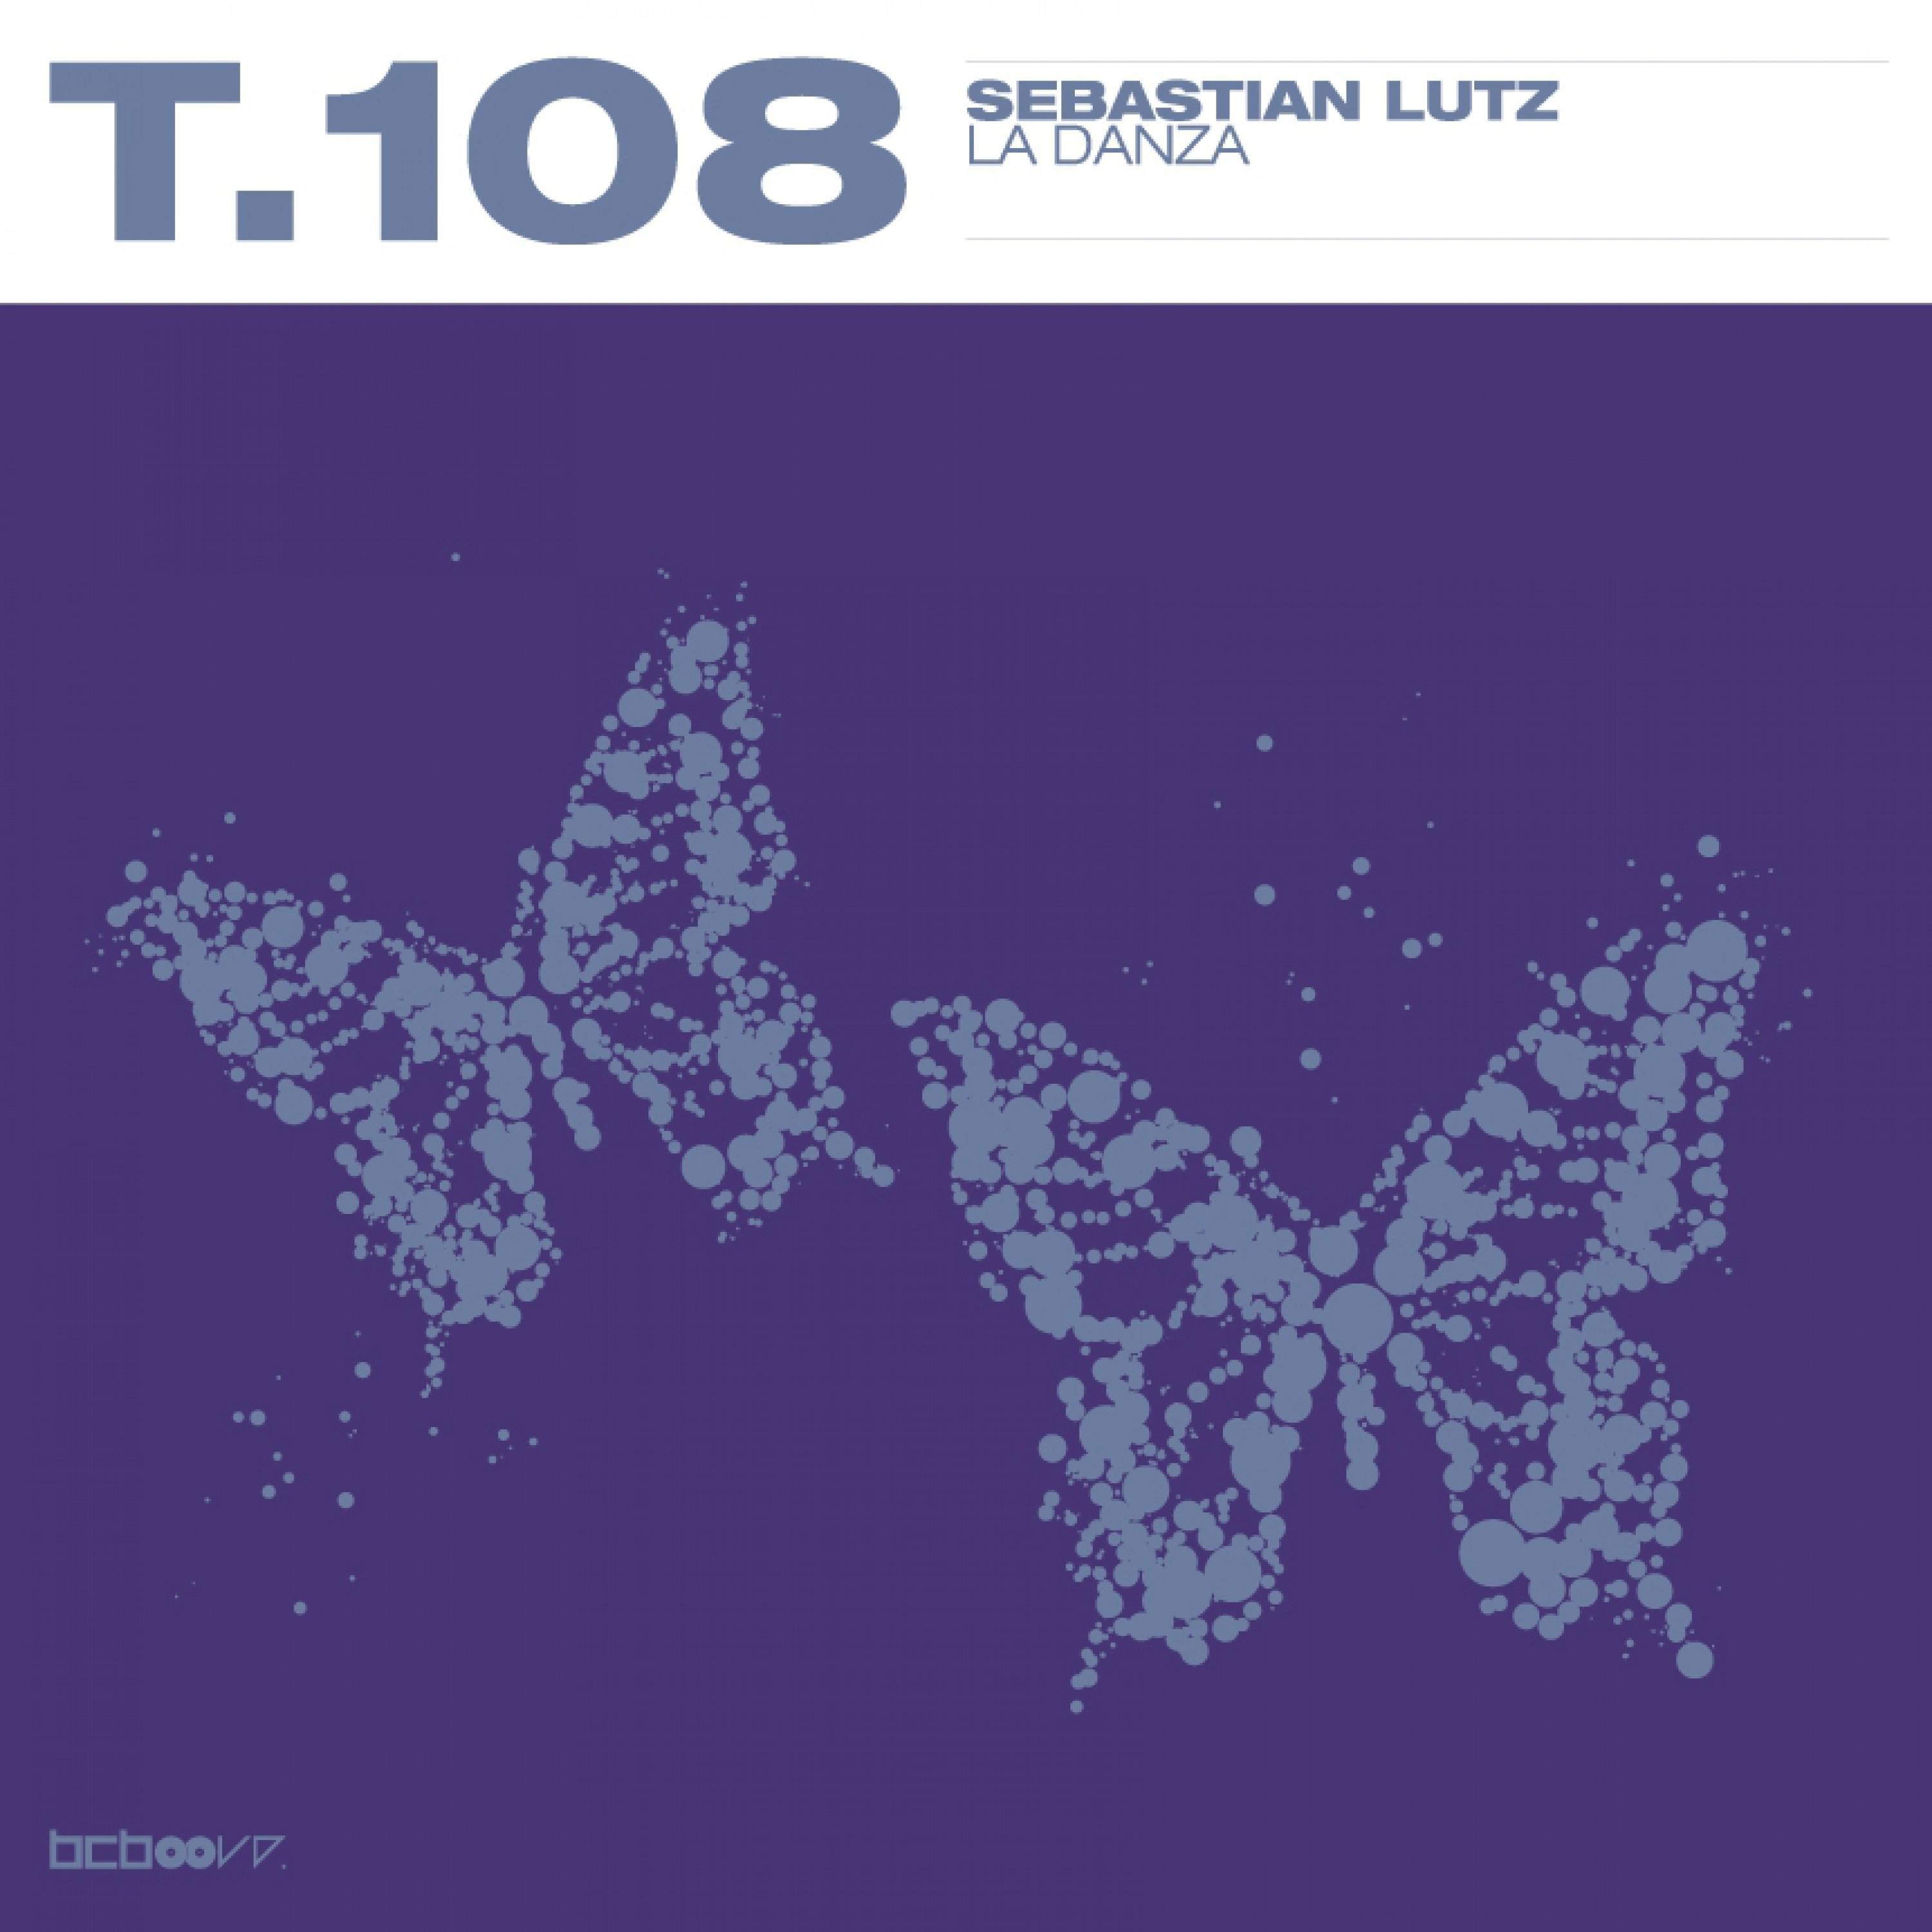 Sebastian Lutz - La Danza (Sensou Remix)